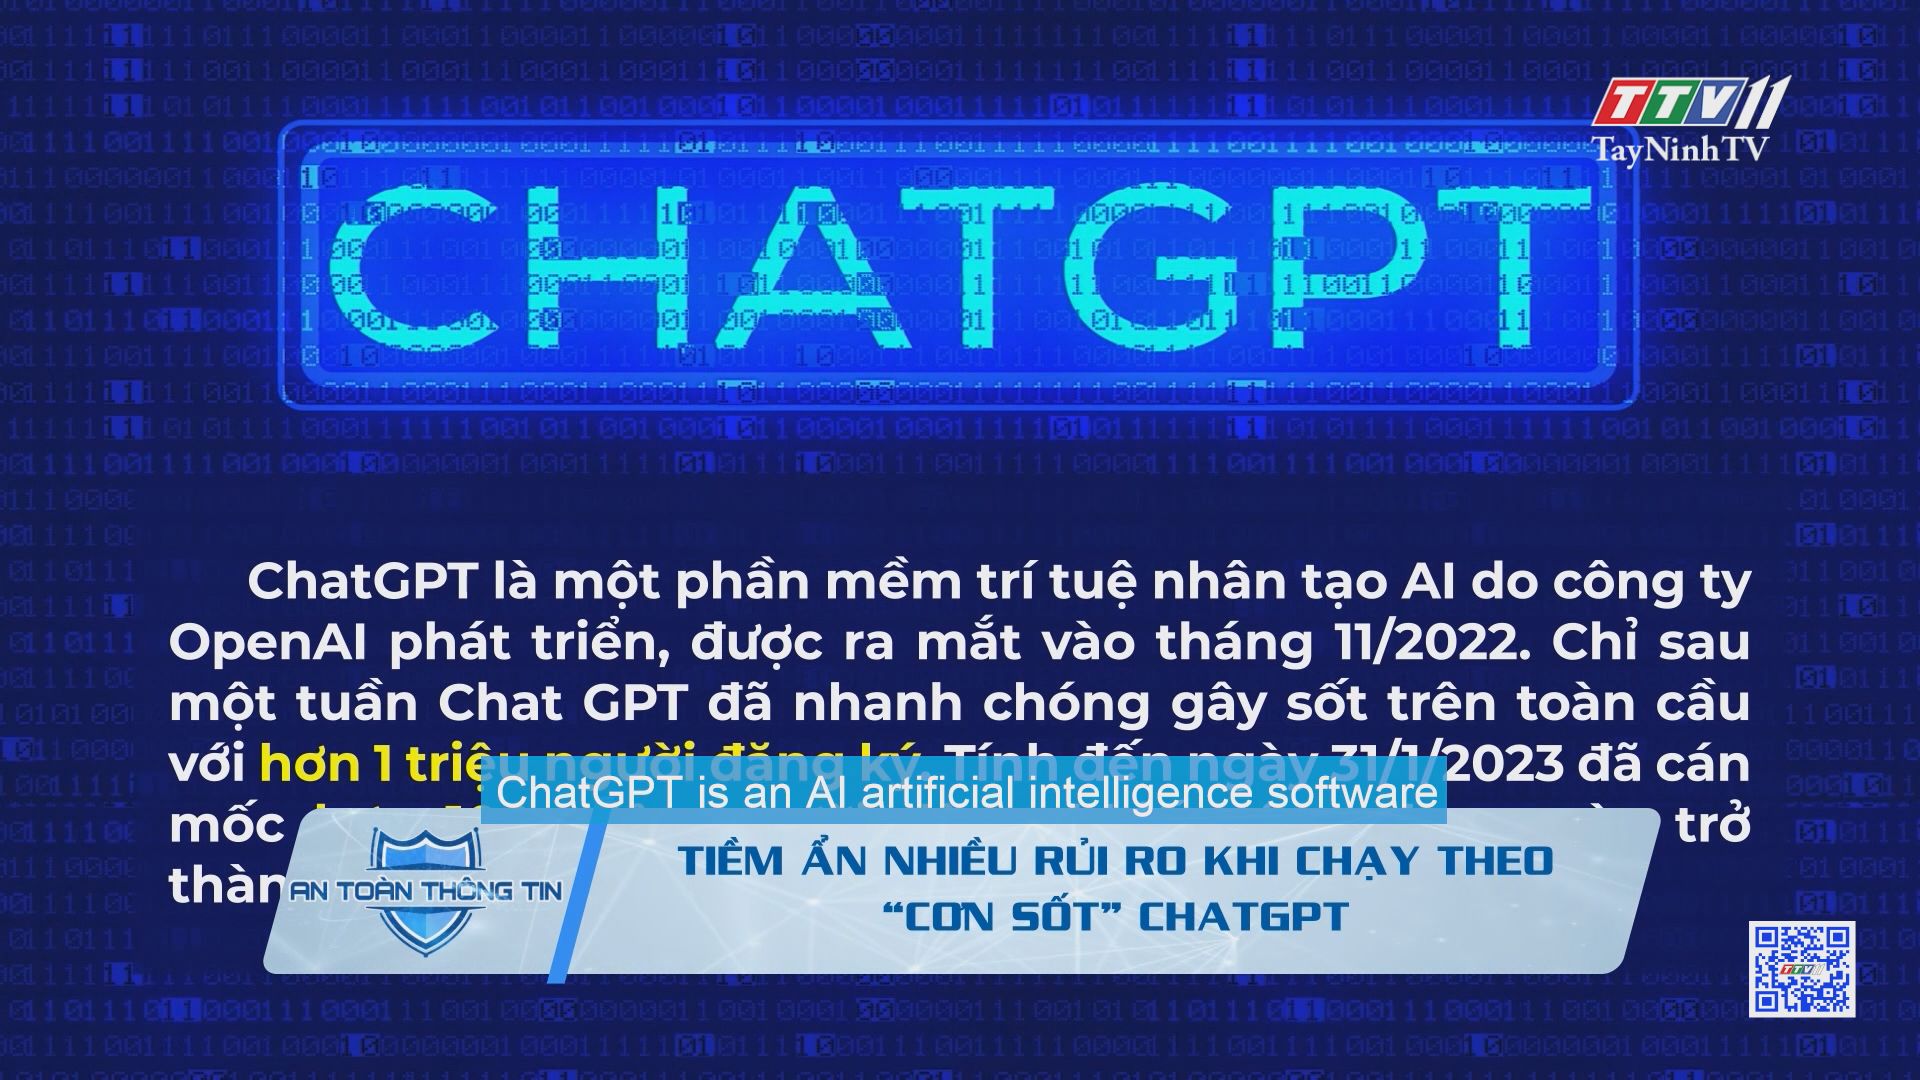 Tiềm ẩn nhiều rủi ro khi chạy theo “cơn sốt” ChatGPT | An toàn thông tin | TayNinhTV